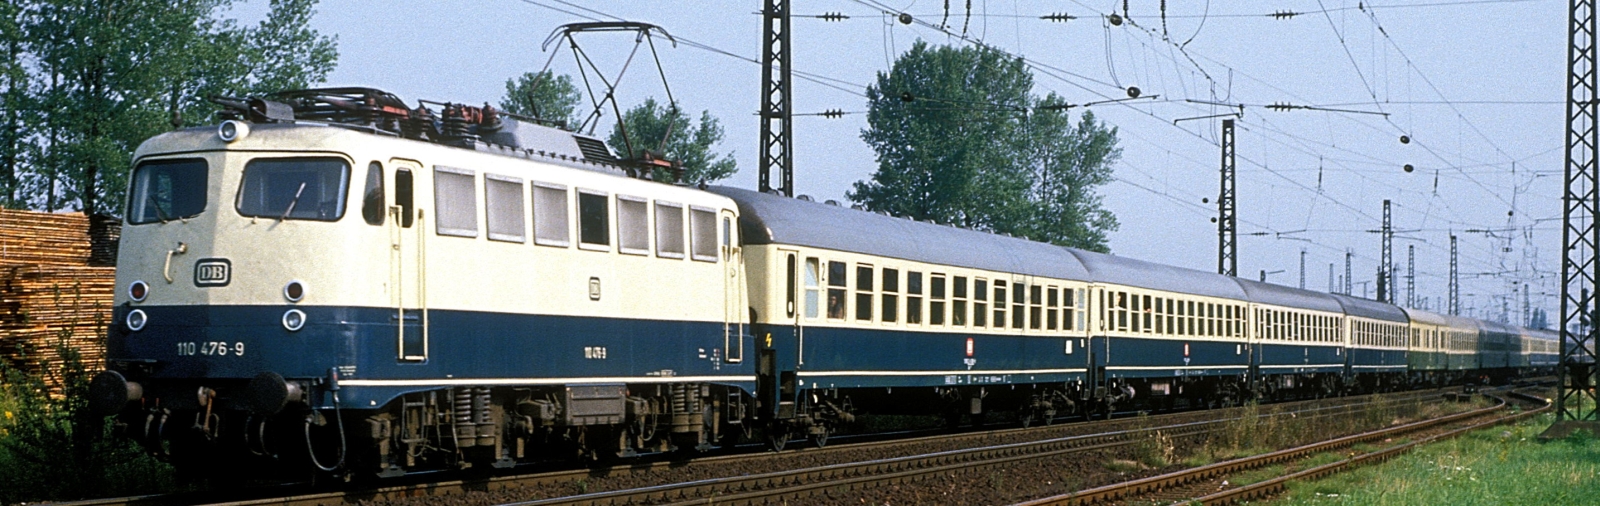 110 476 in August 1991 in Appenweiler